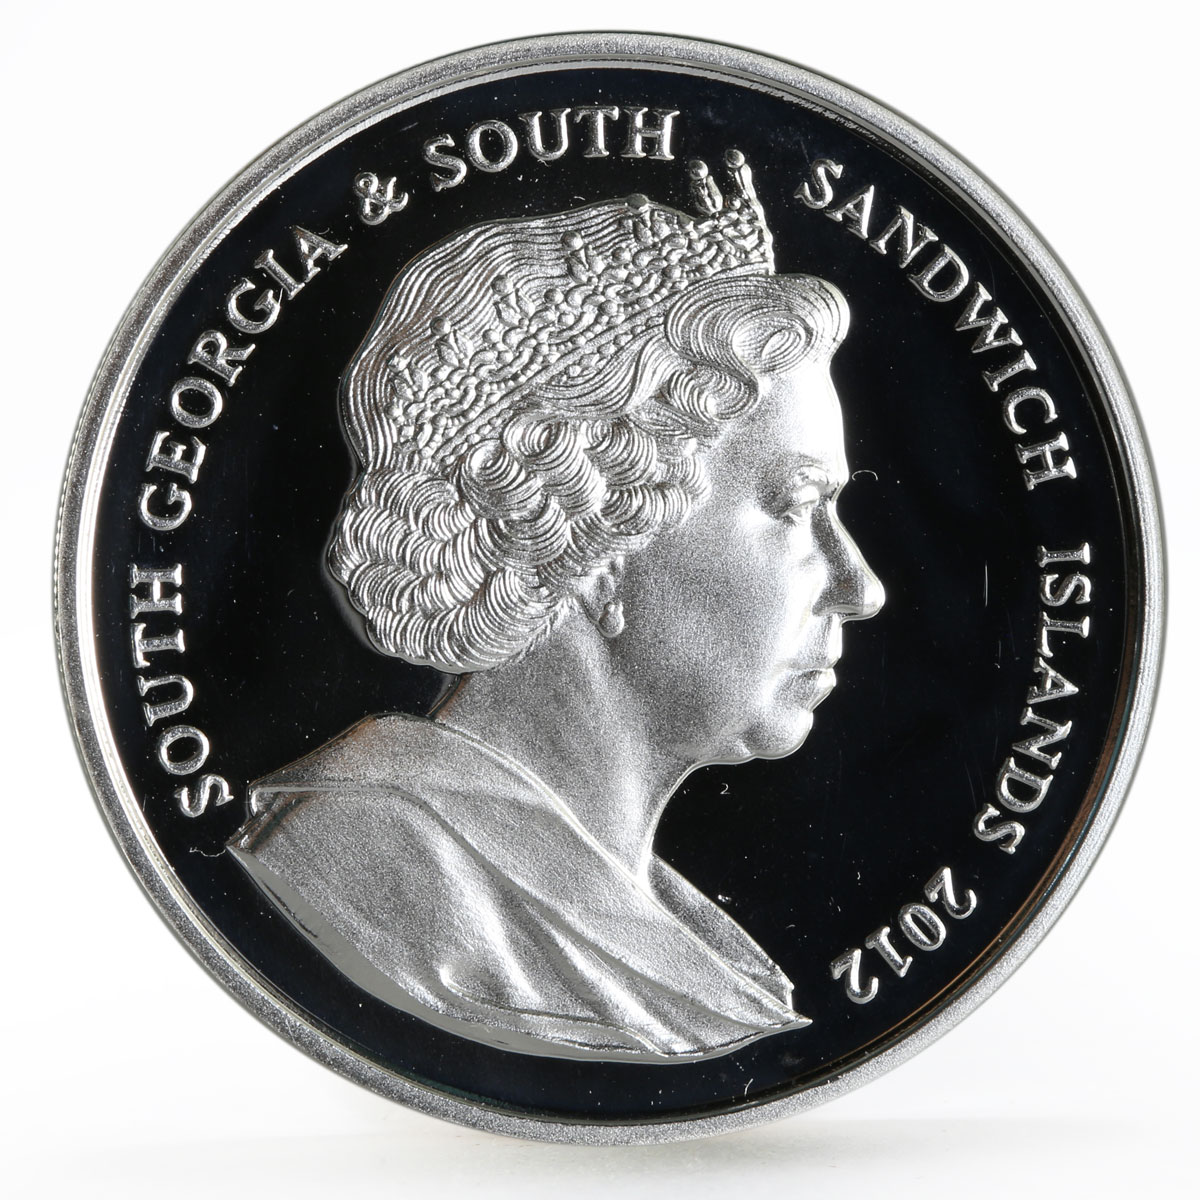 Sandwich Islands 2 pounds Diamond Jubilee of Queen Elizabeth II silver coin 2012